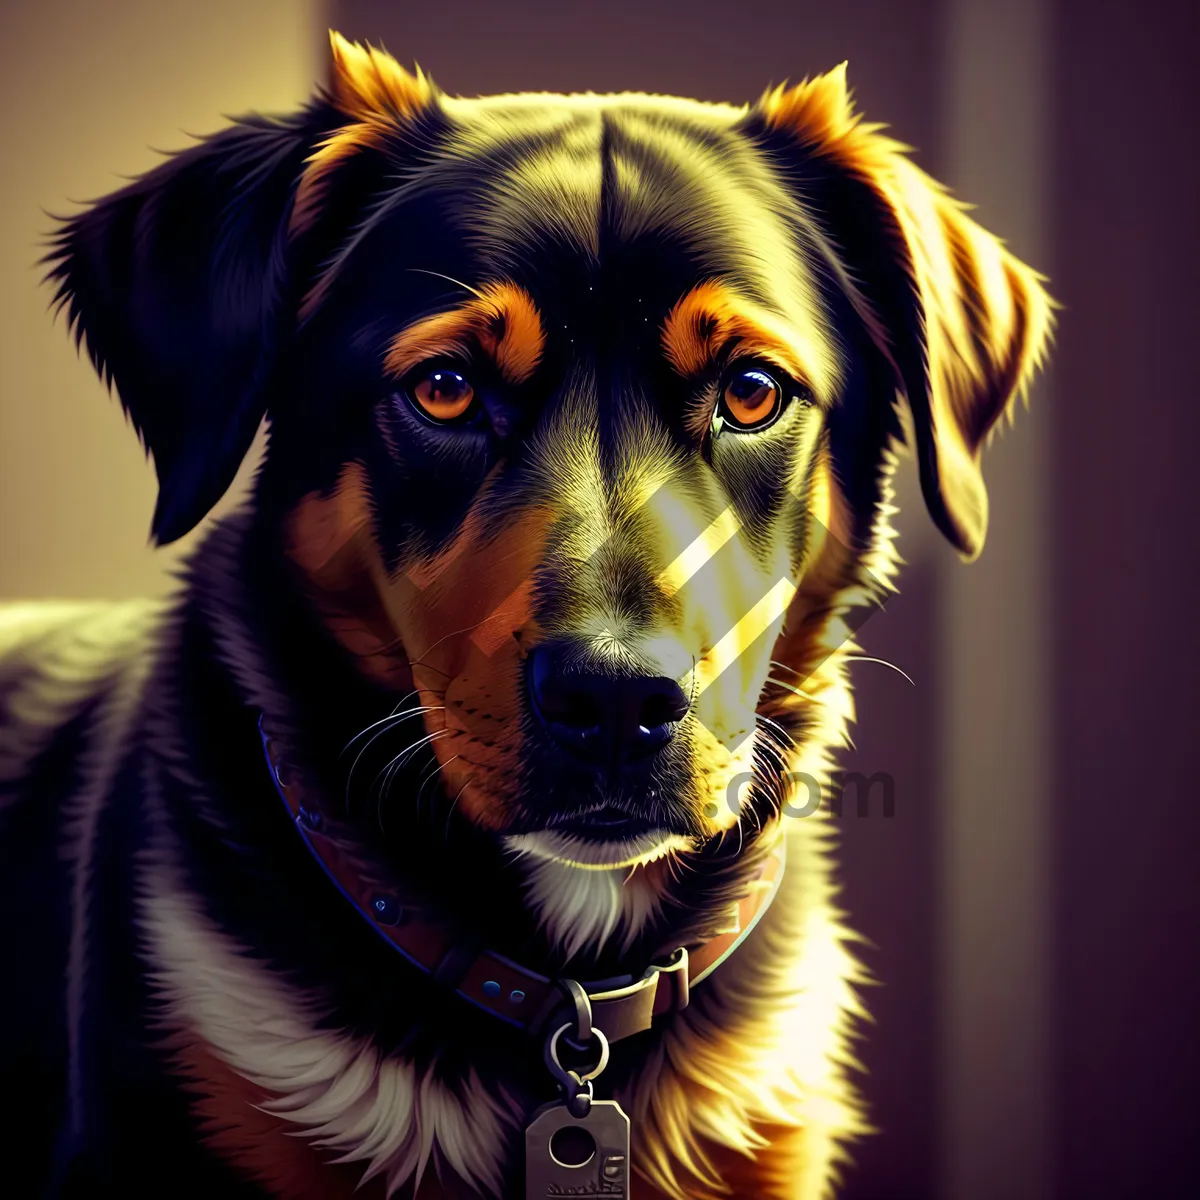 Picture of Adorable Golden Retriever Puppy Portrait